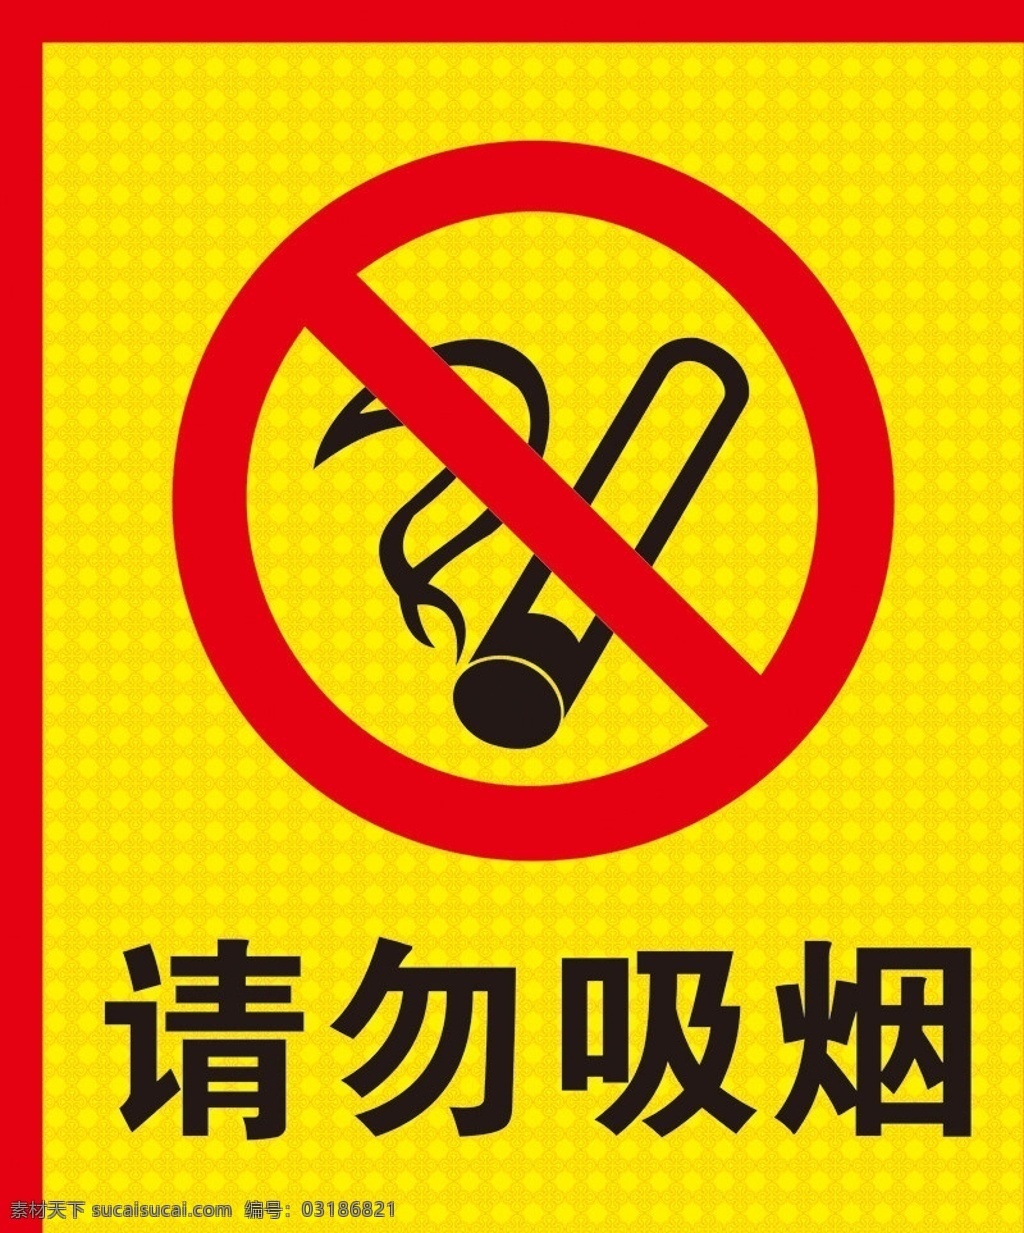 请勿吸烟 请勿 吸烟 矢量 模板下载 禁止吸烟 no smoking 禁烟标志 禁止吸烟标志 禁烟小牌子 禁烟牌 公共标识标志 标识标志图标